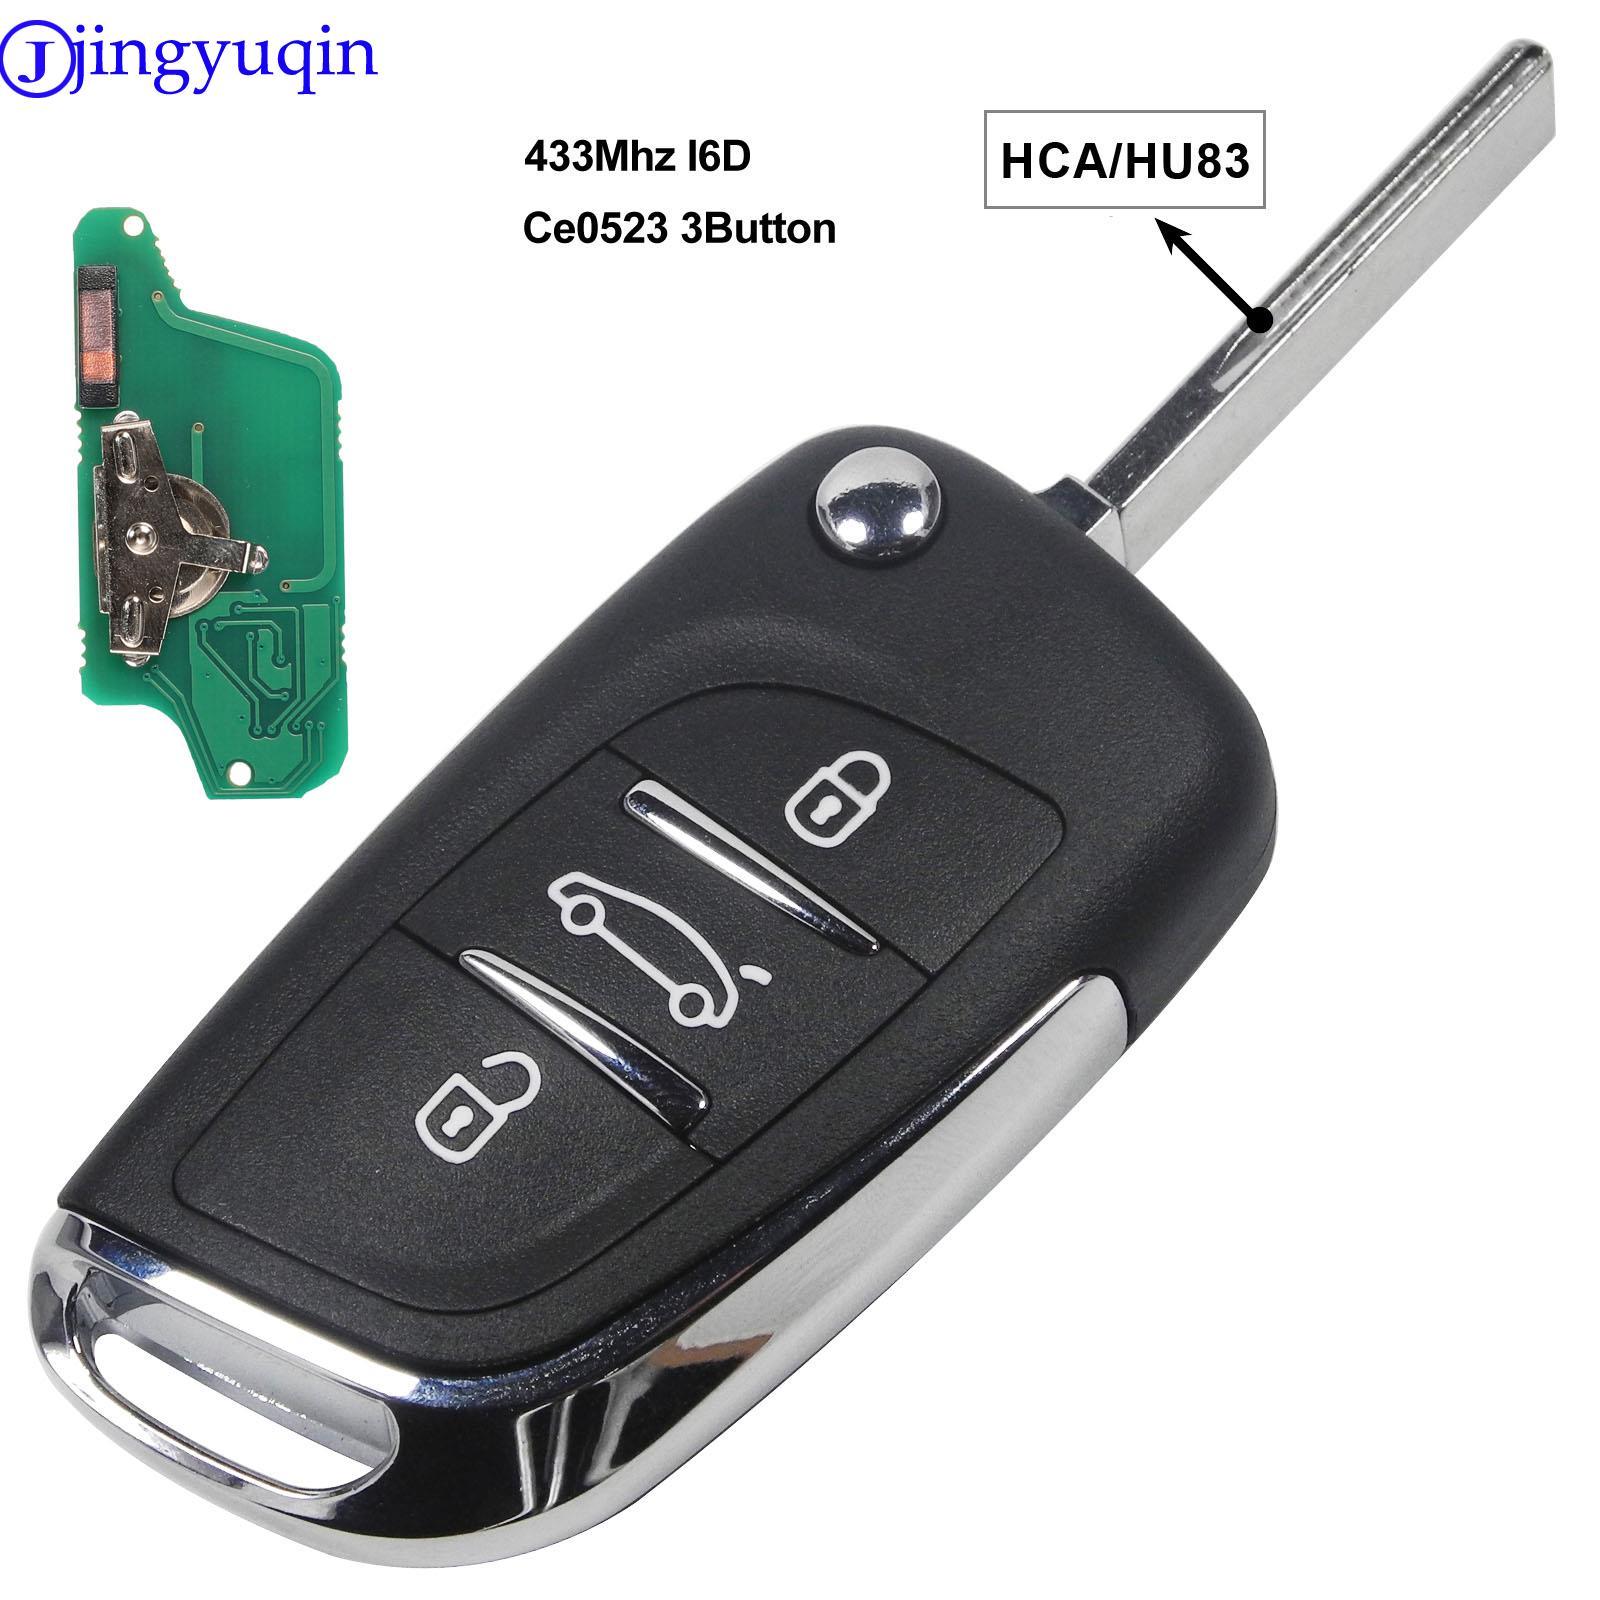 Изображение товара: Jingyuqin ASK/FSK 433 МГц ID46 чип CE0523 модифицированный дистанционный брелок с откидной крышкой для Peugeot 307 407 607 HU83/VA2 Blade 2 3 кнопочный ключ